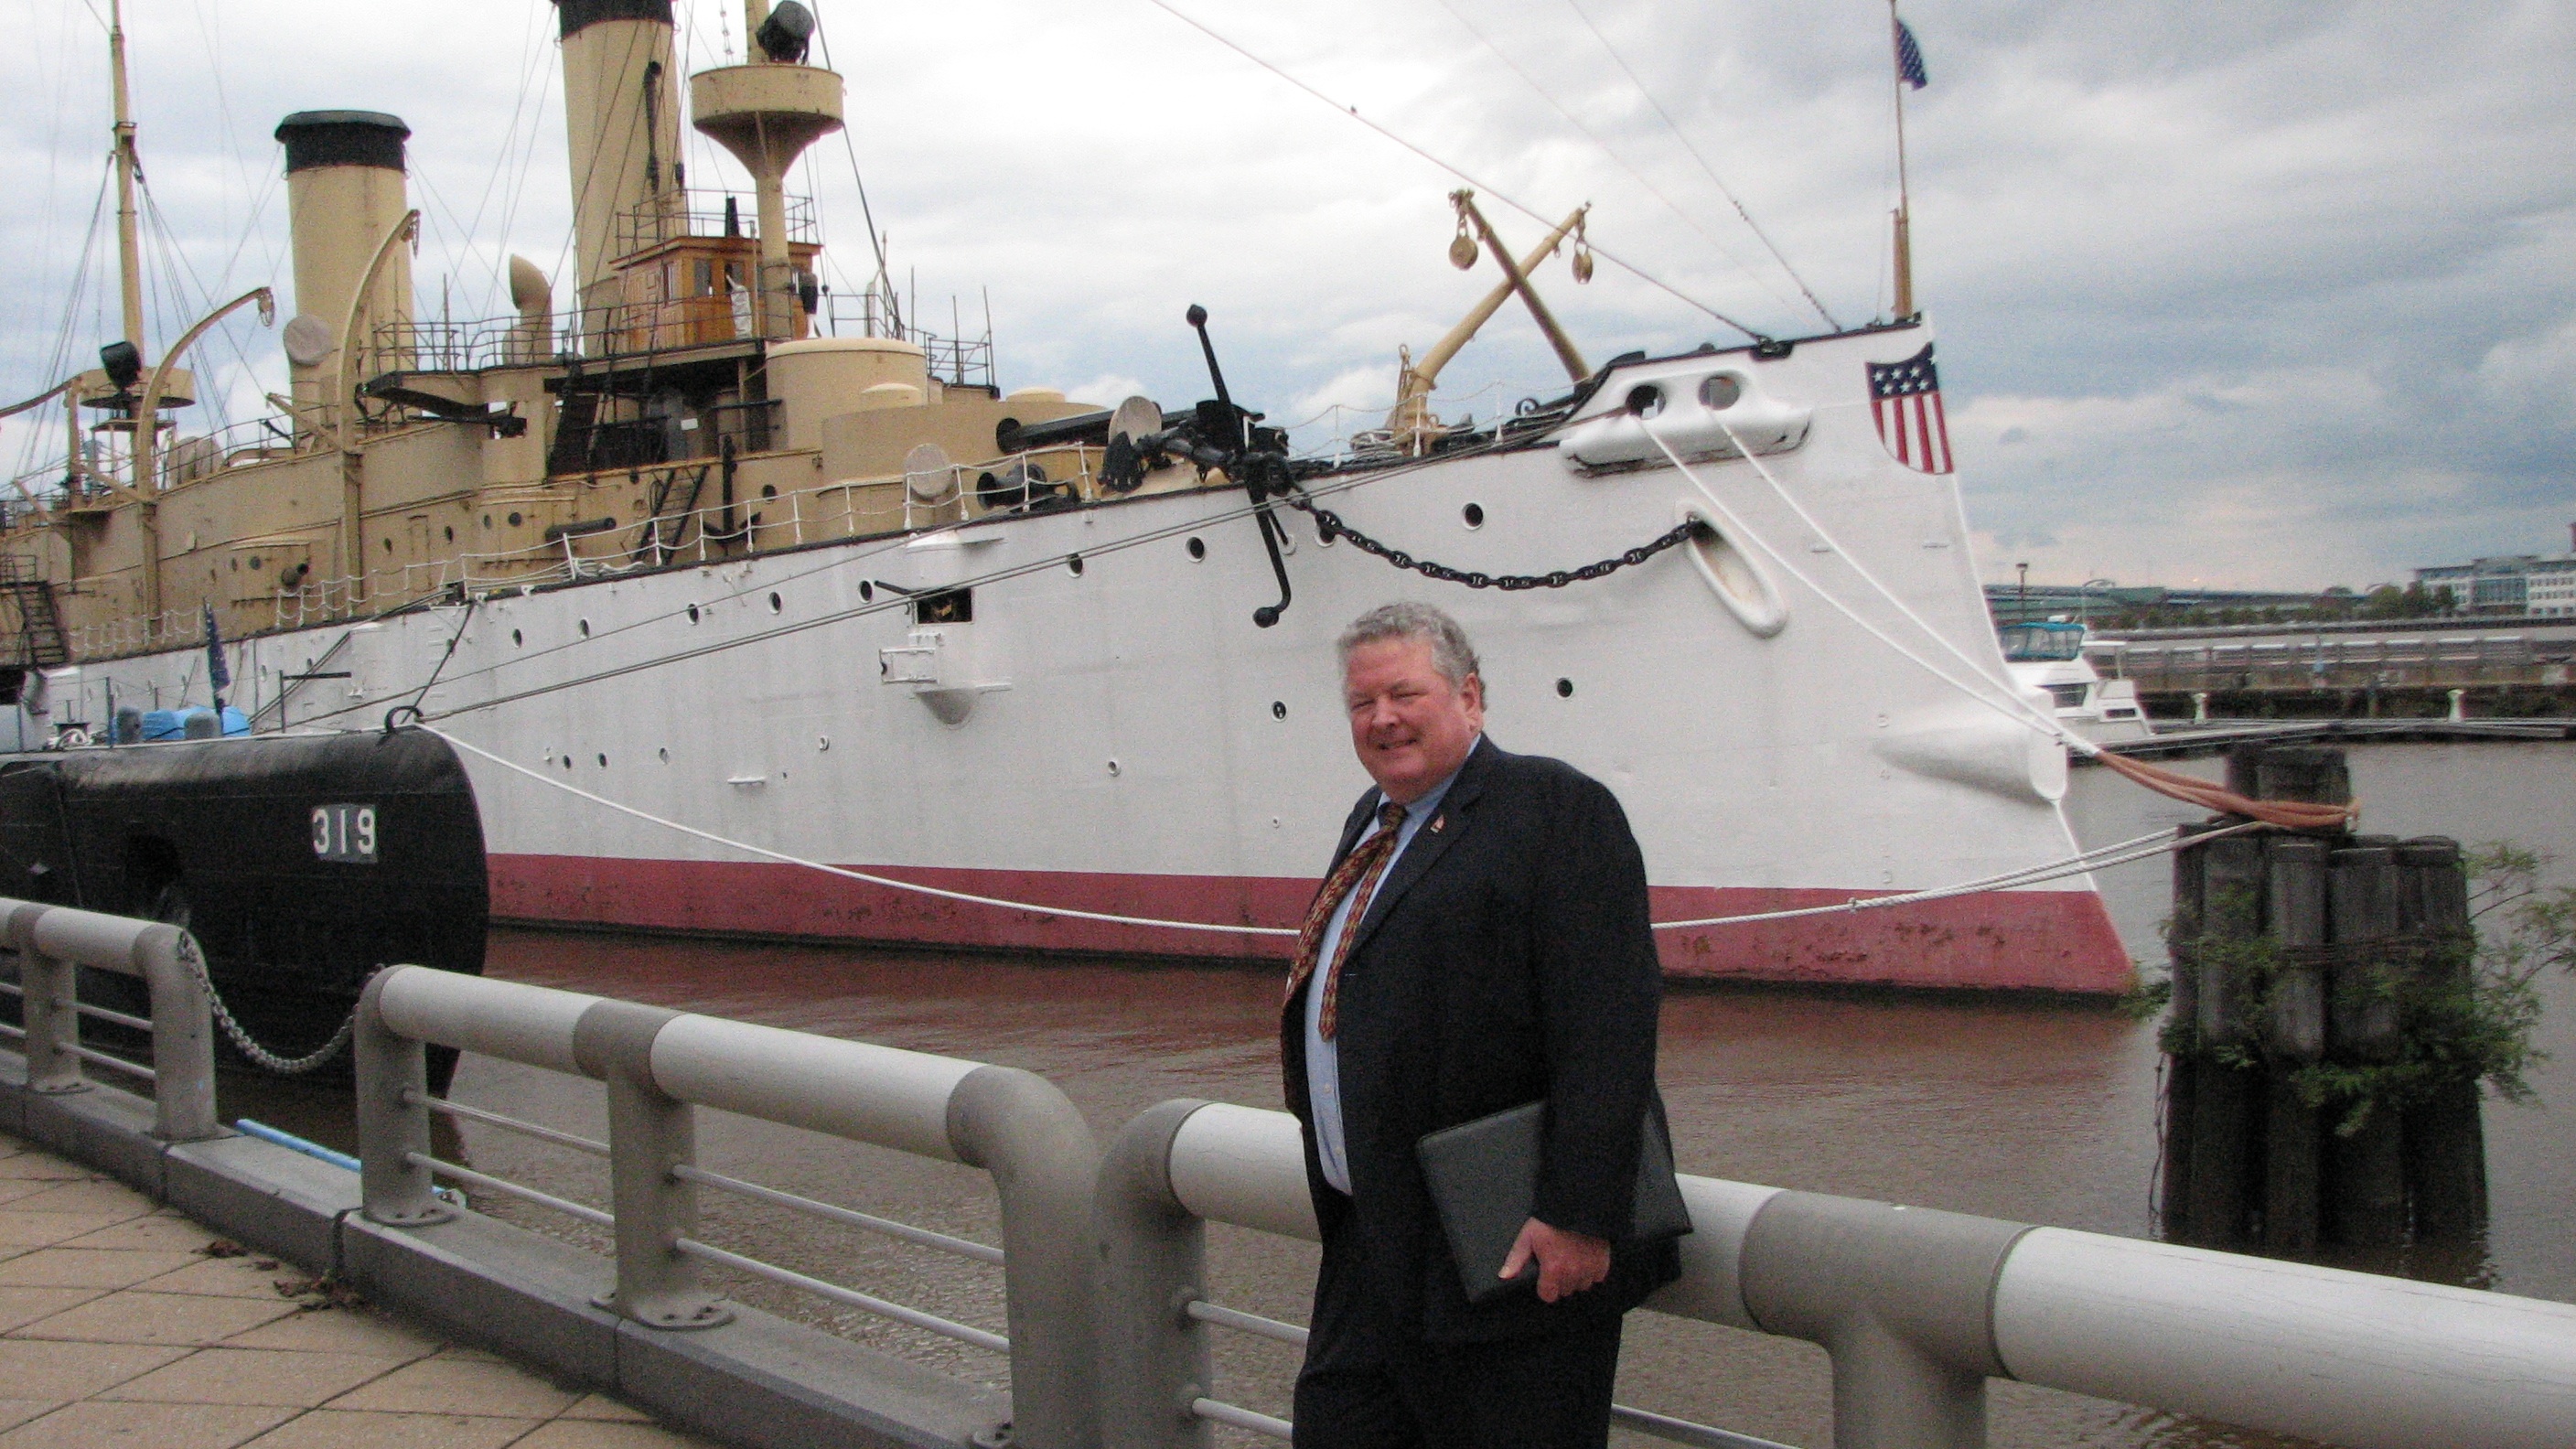 Retired Navy office Glenn Porter has a fundraising plan for the historic ship docked at Penn's Landing.